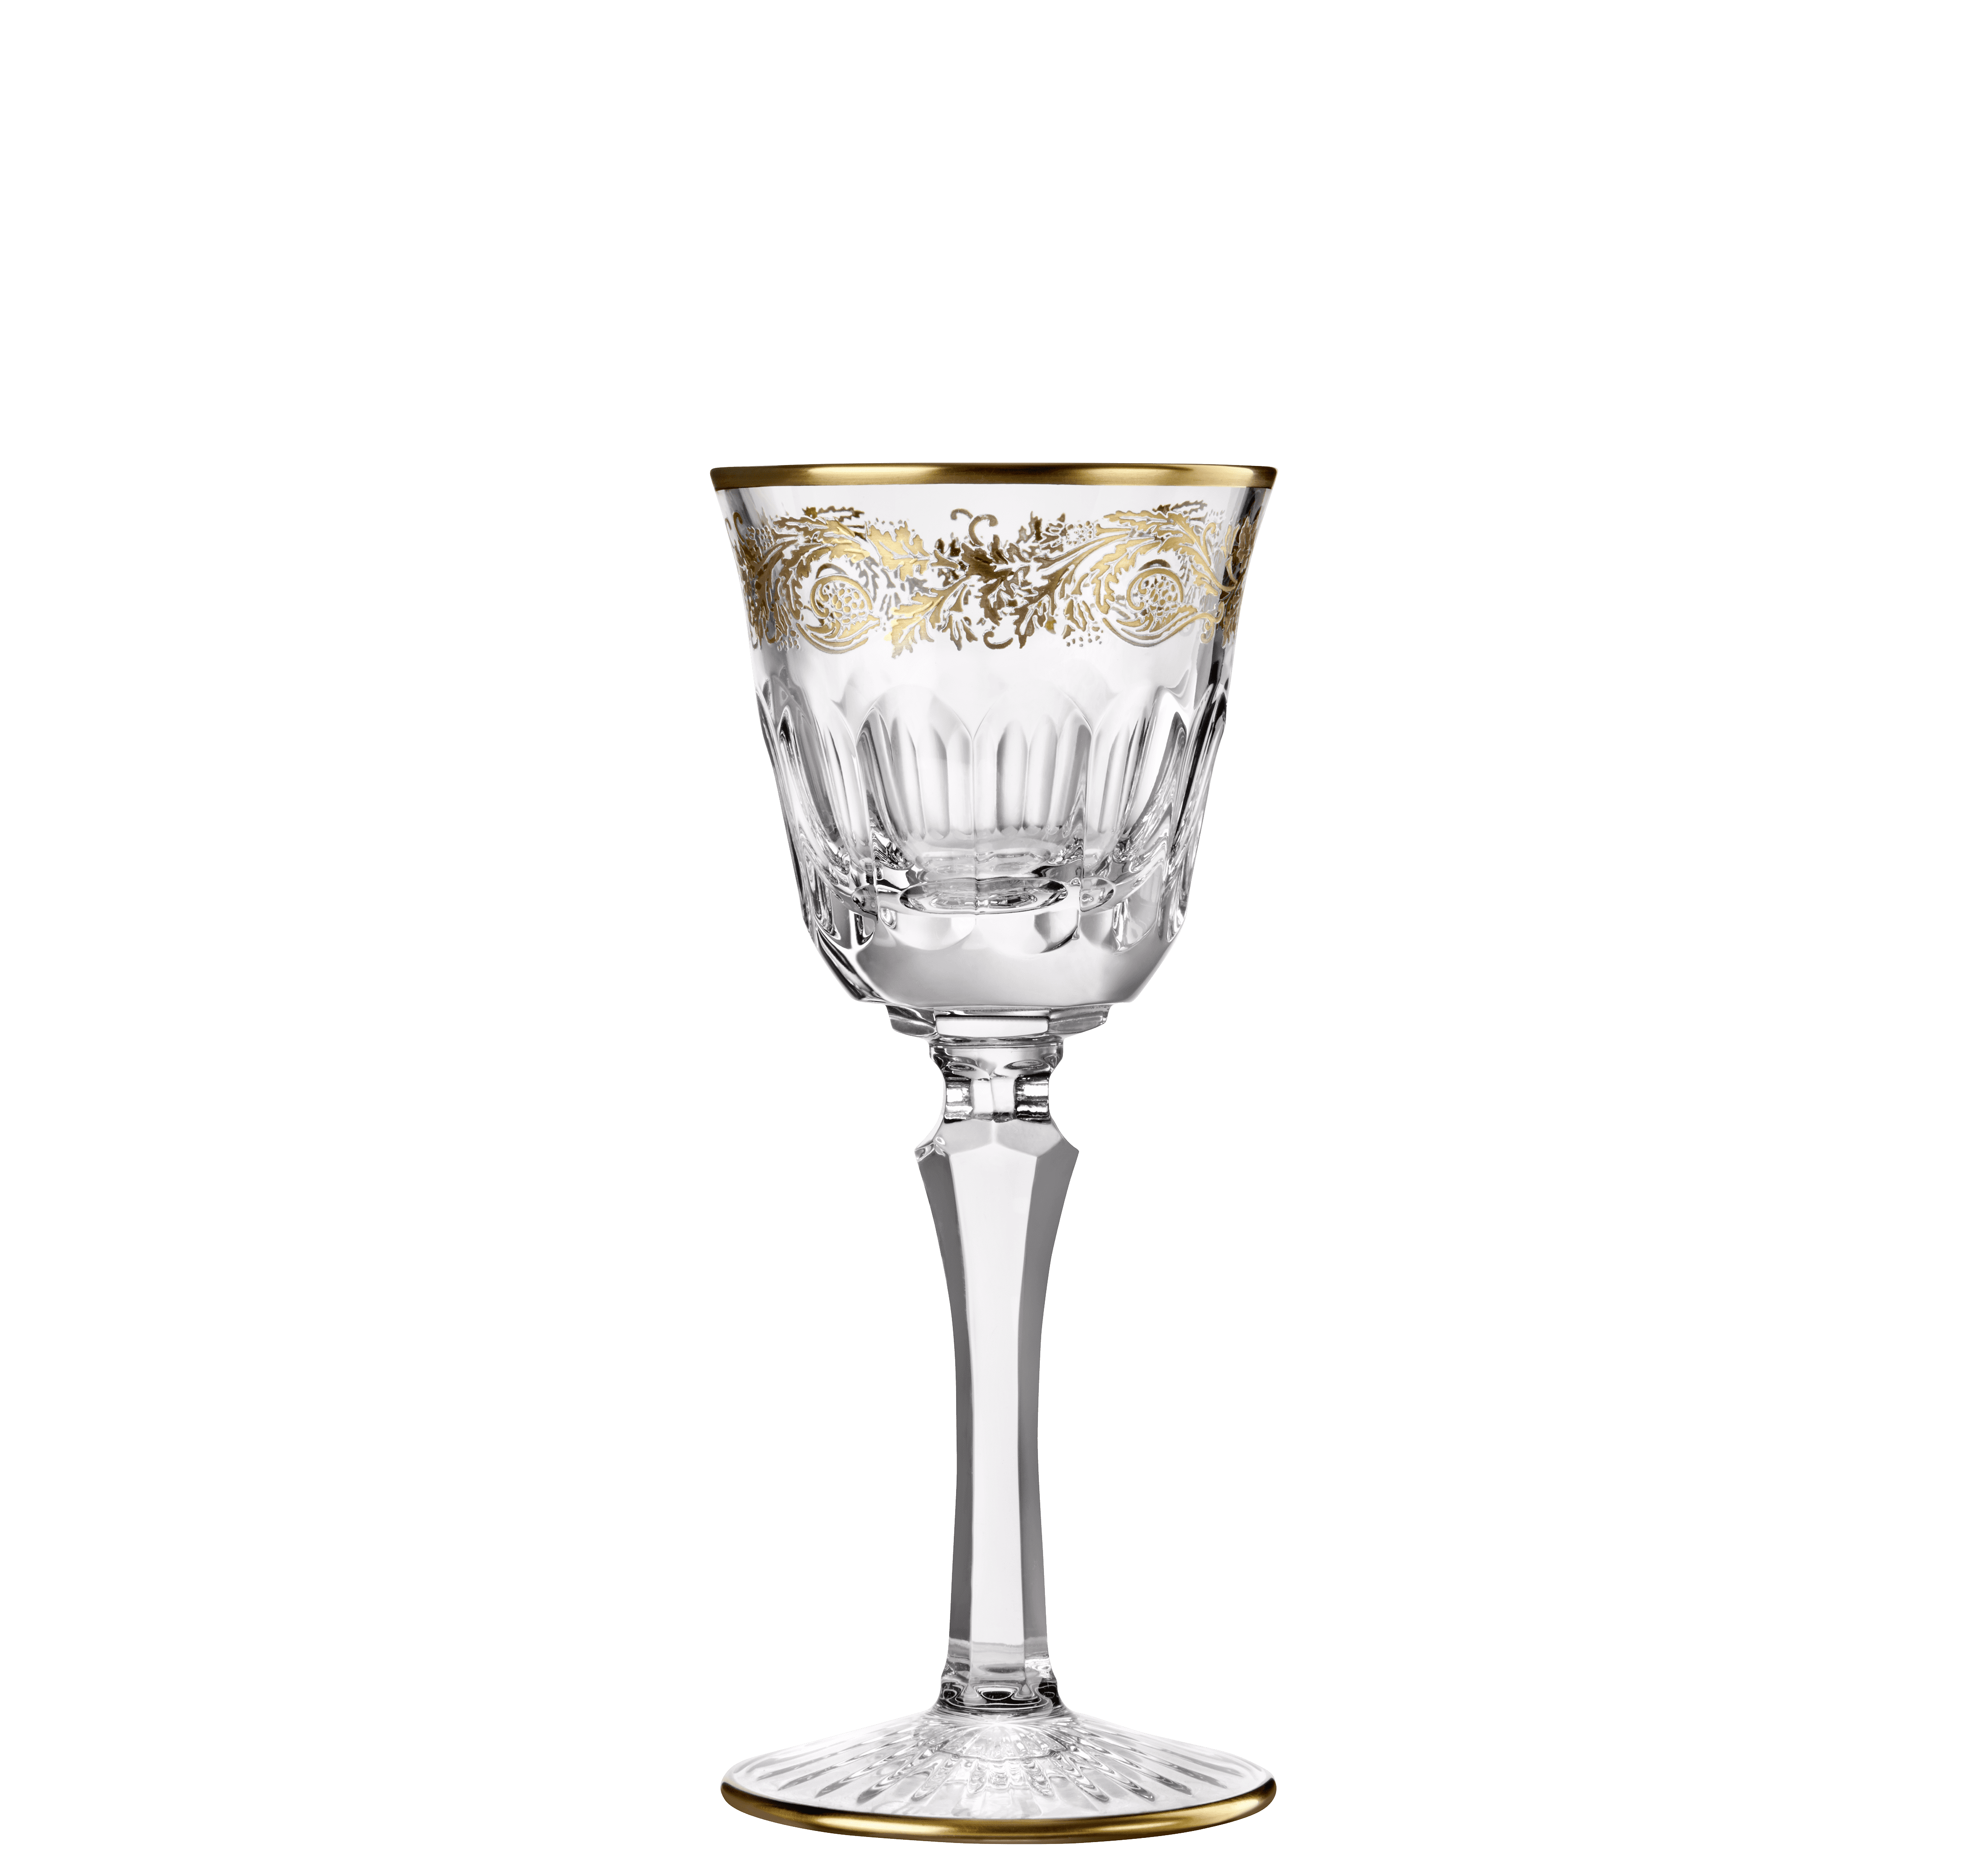 Acheter Verres en cristal feuille d'or verres à liqueur en cristal